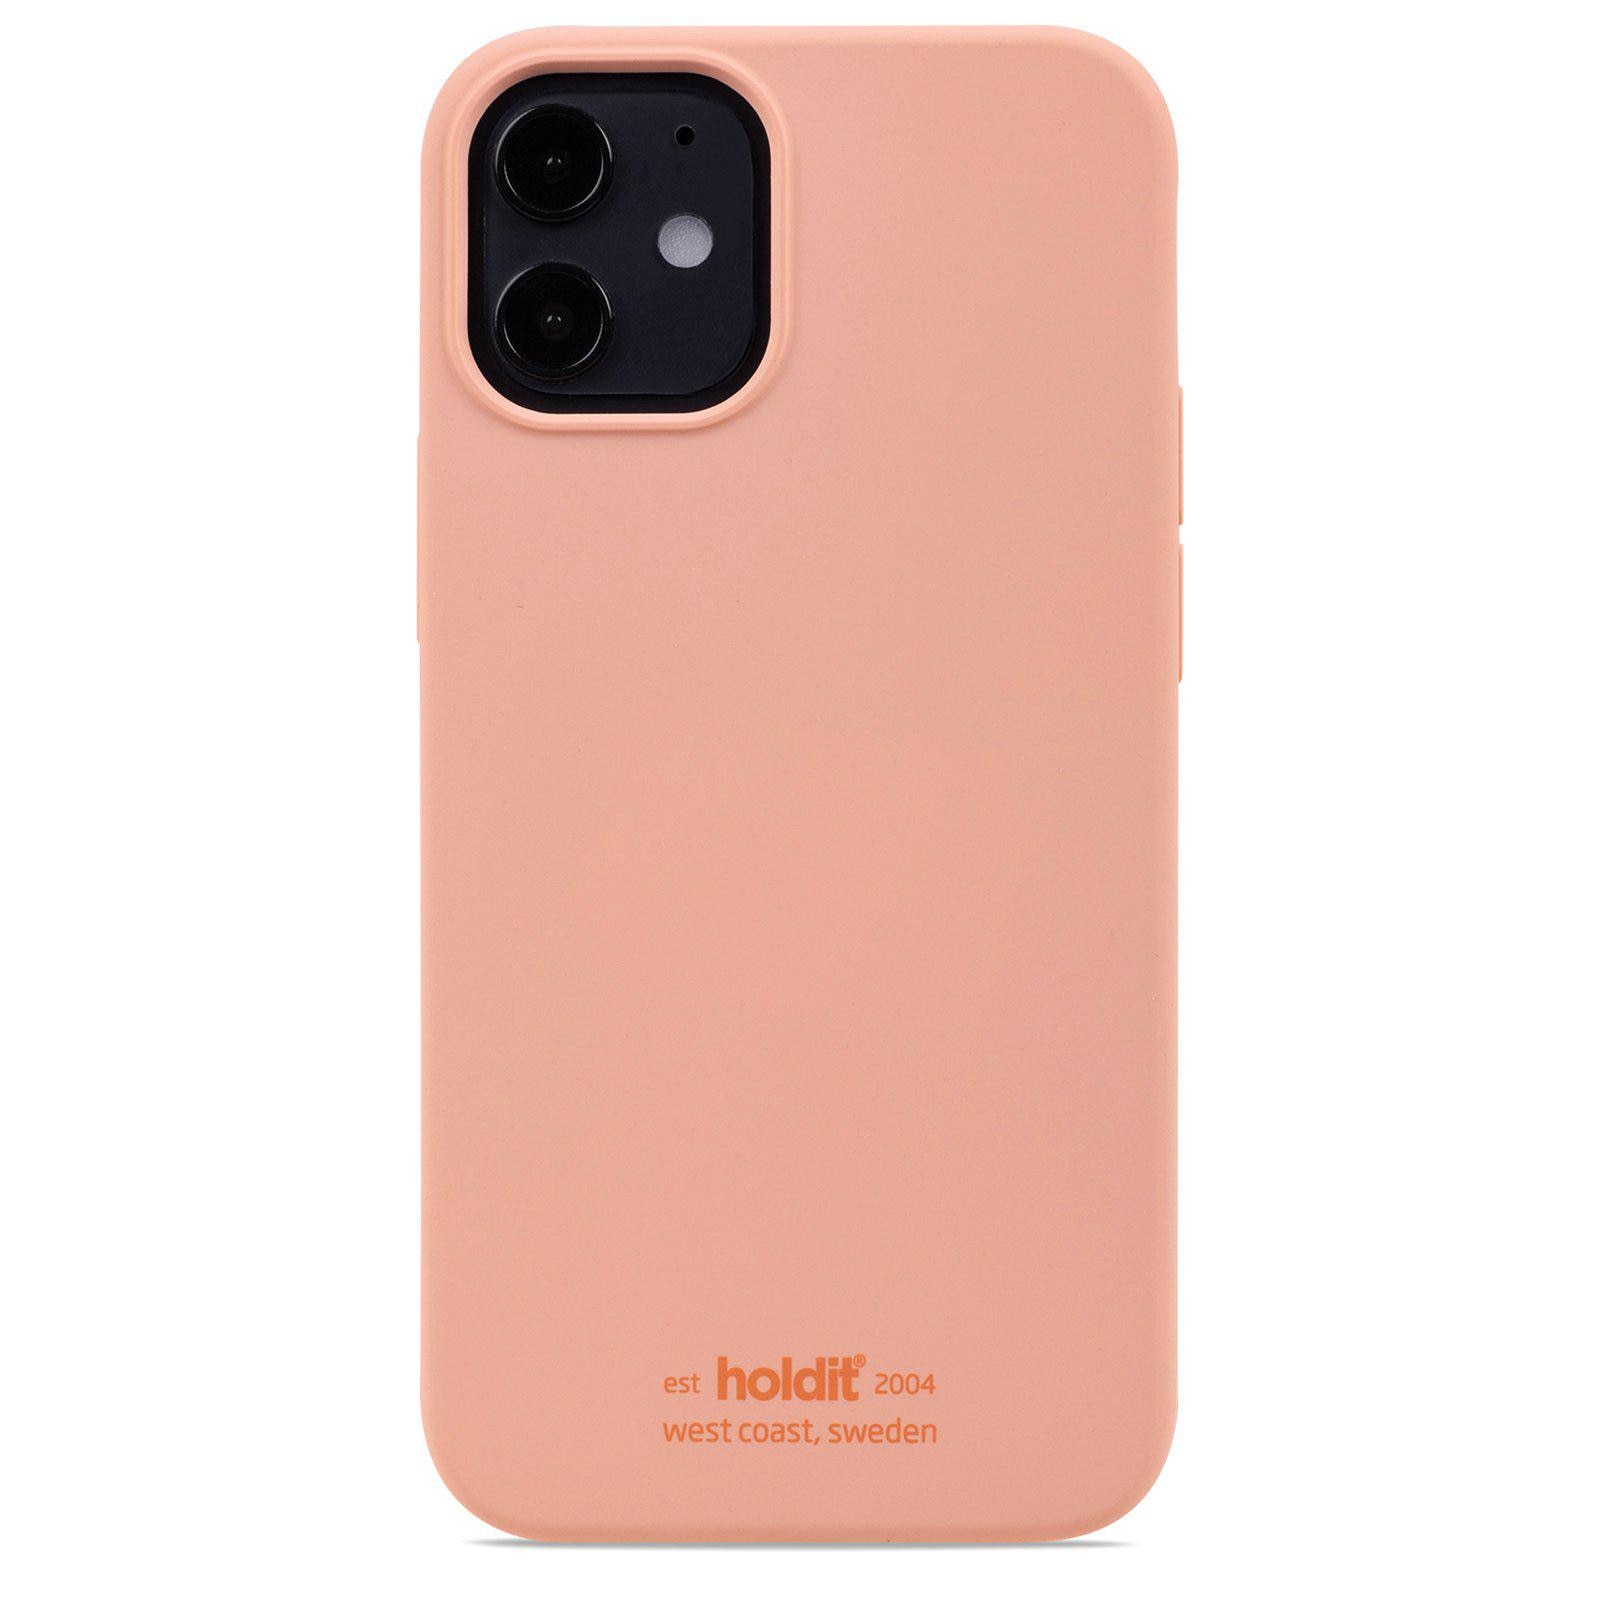 Silikonhülle iPhone 12 Mini Pink Peach